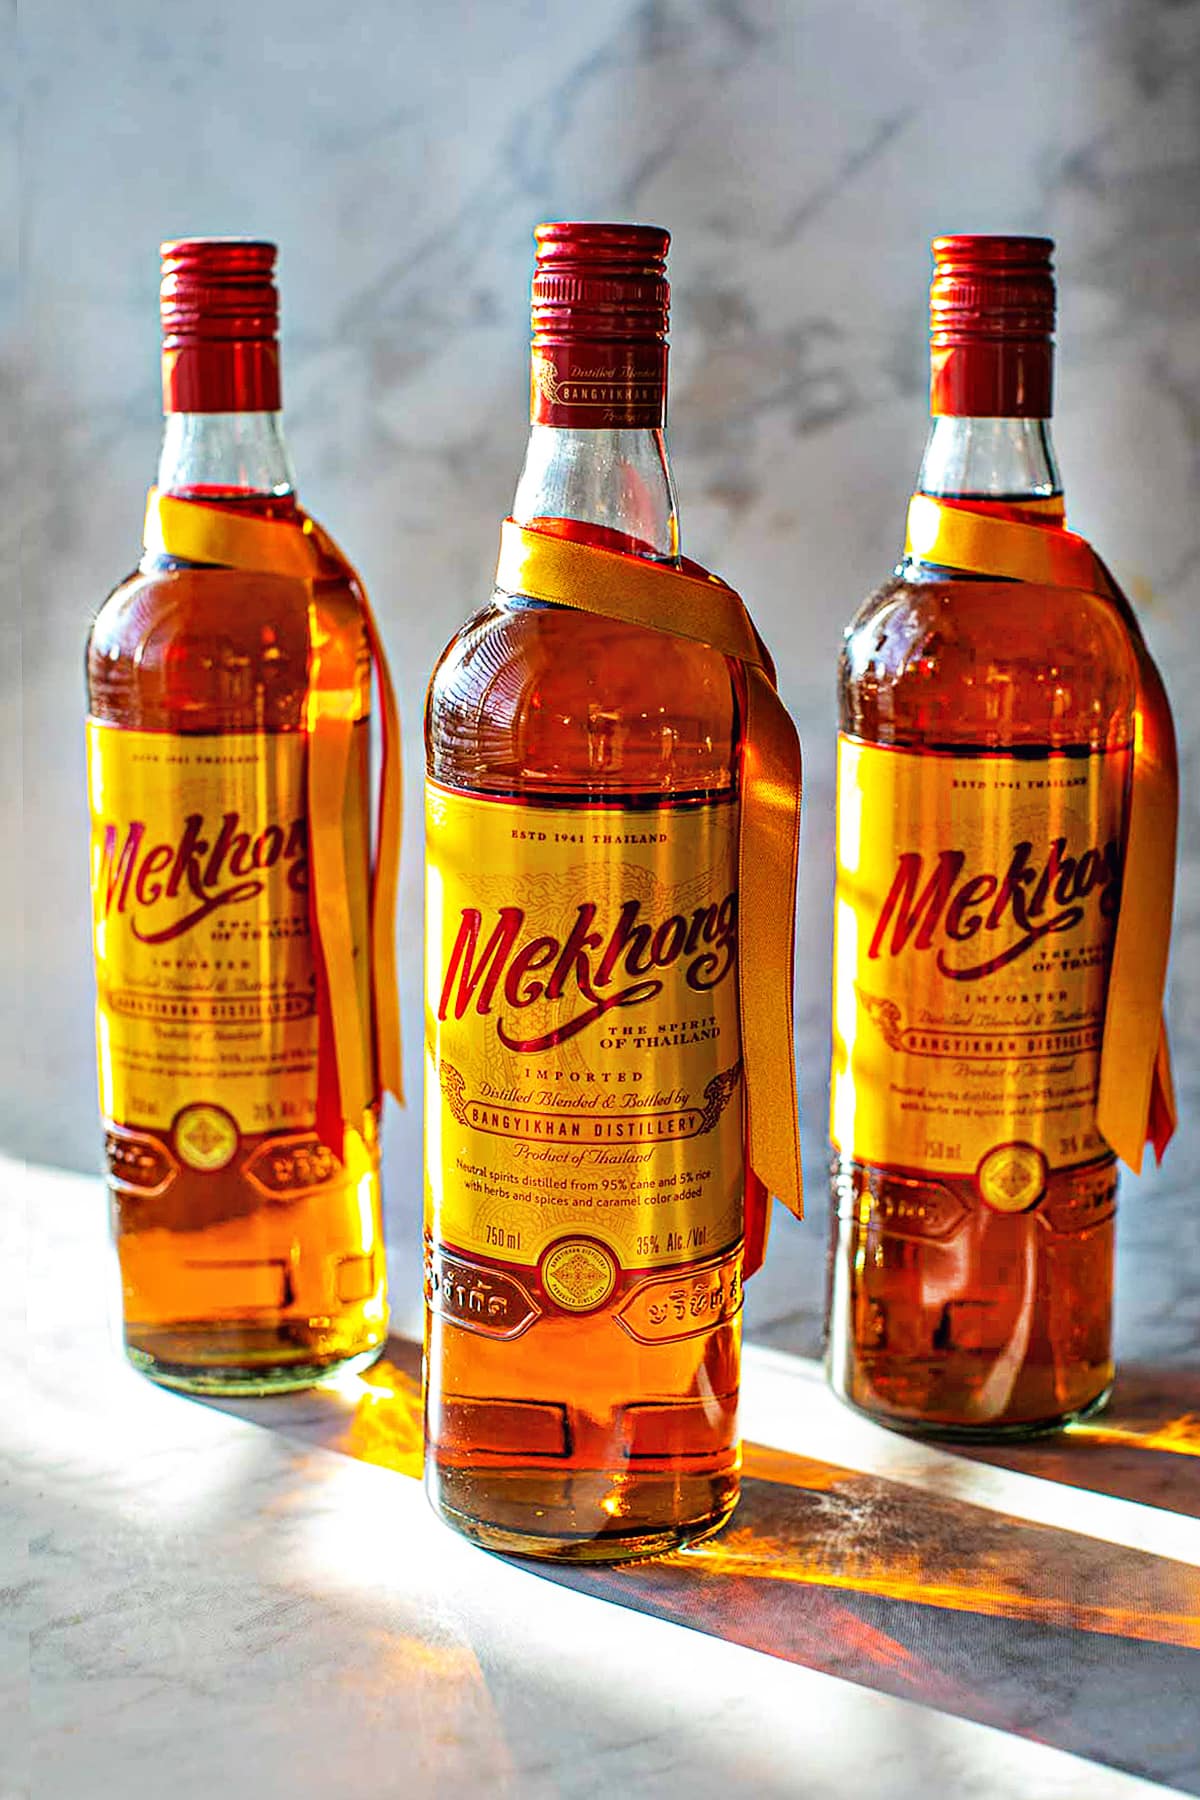 3 Mekhong Whiskey bottles on the table. 